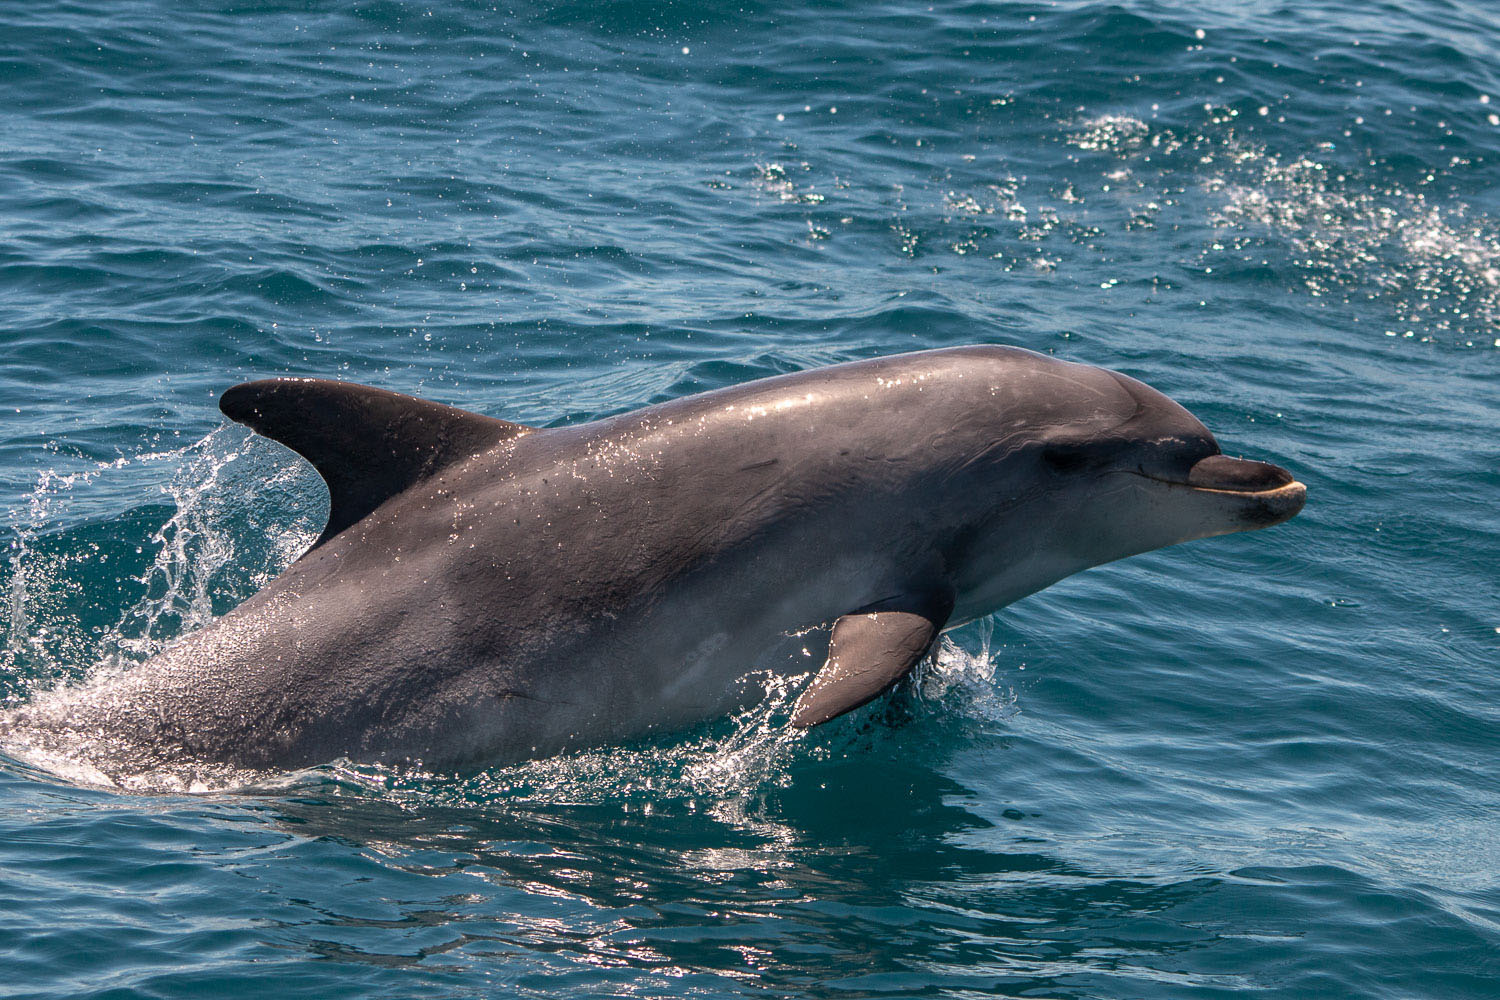 voyage scientifique - cetaces de mediterranee vers la corse a la voile 36